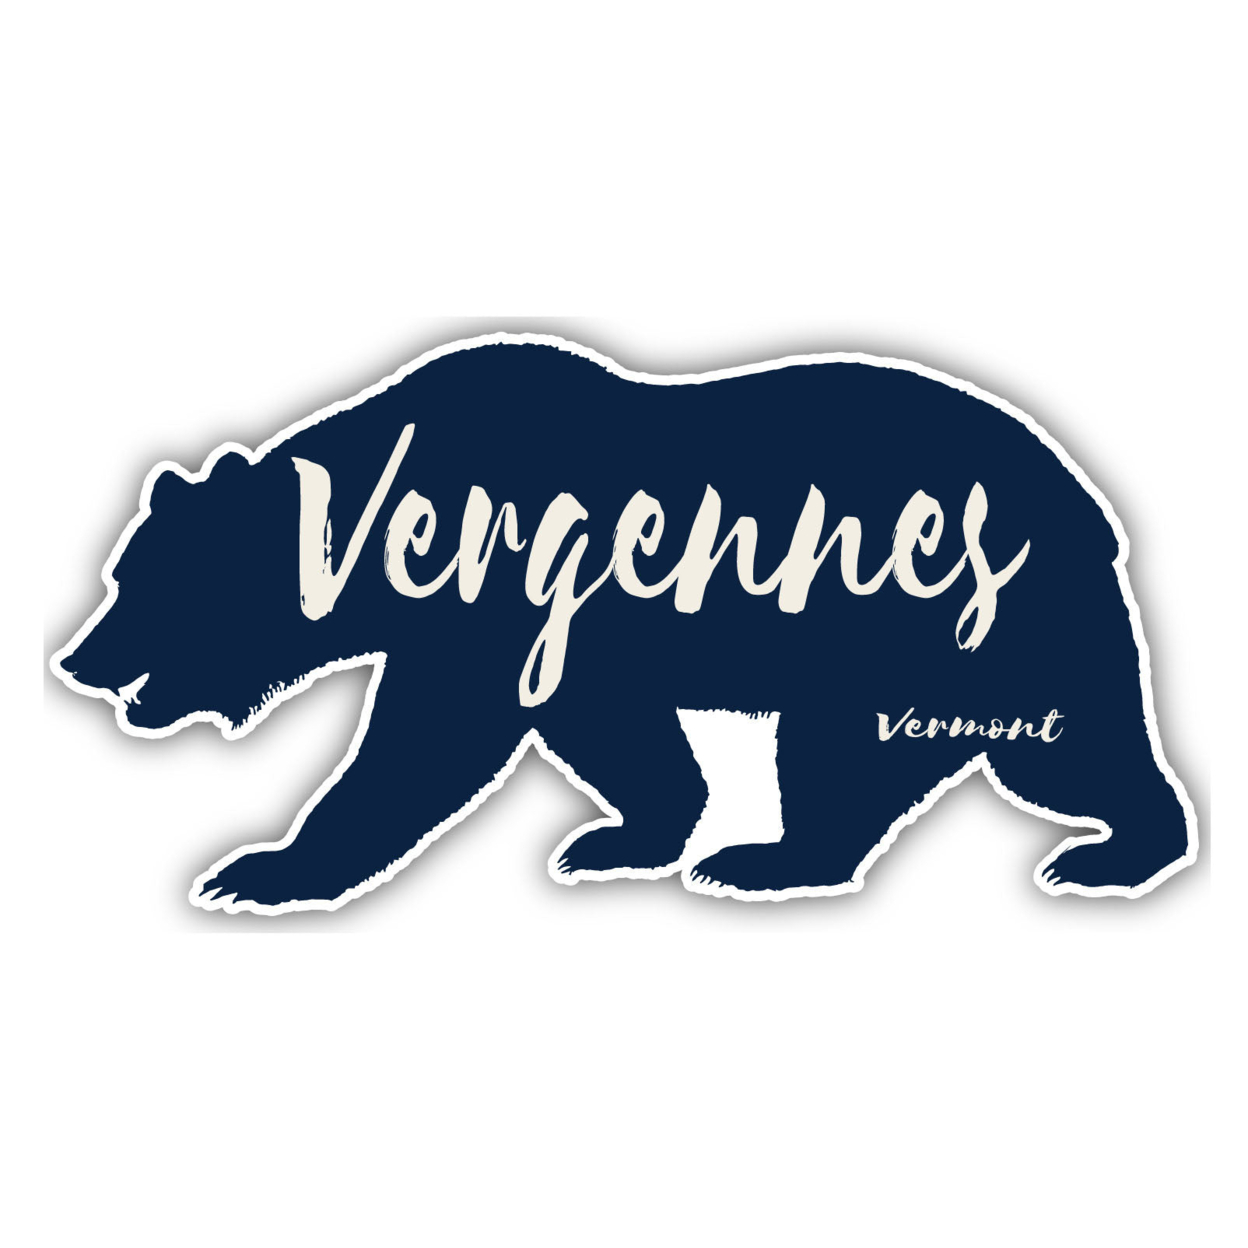 Vergennes Vermont Souvenir Decorative Stickers (Choose Theme And Size) - Single Unit, 2-Inch, Bear